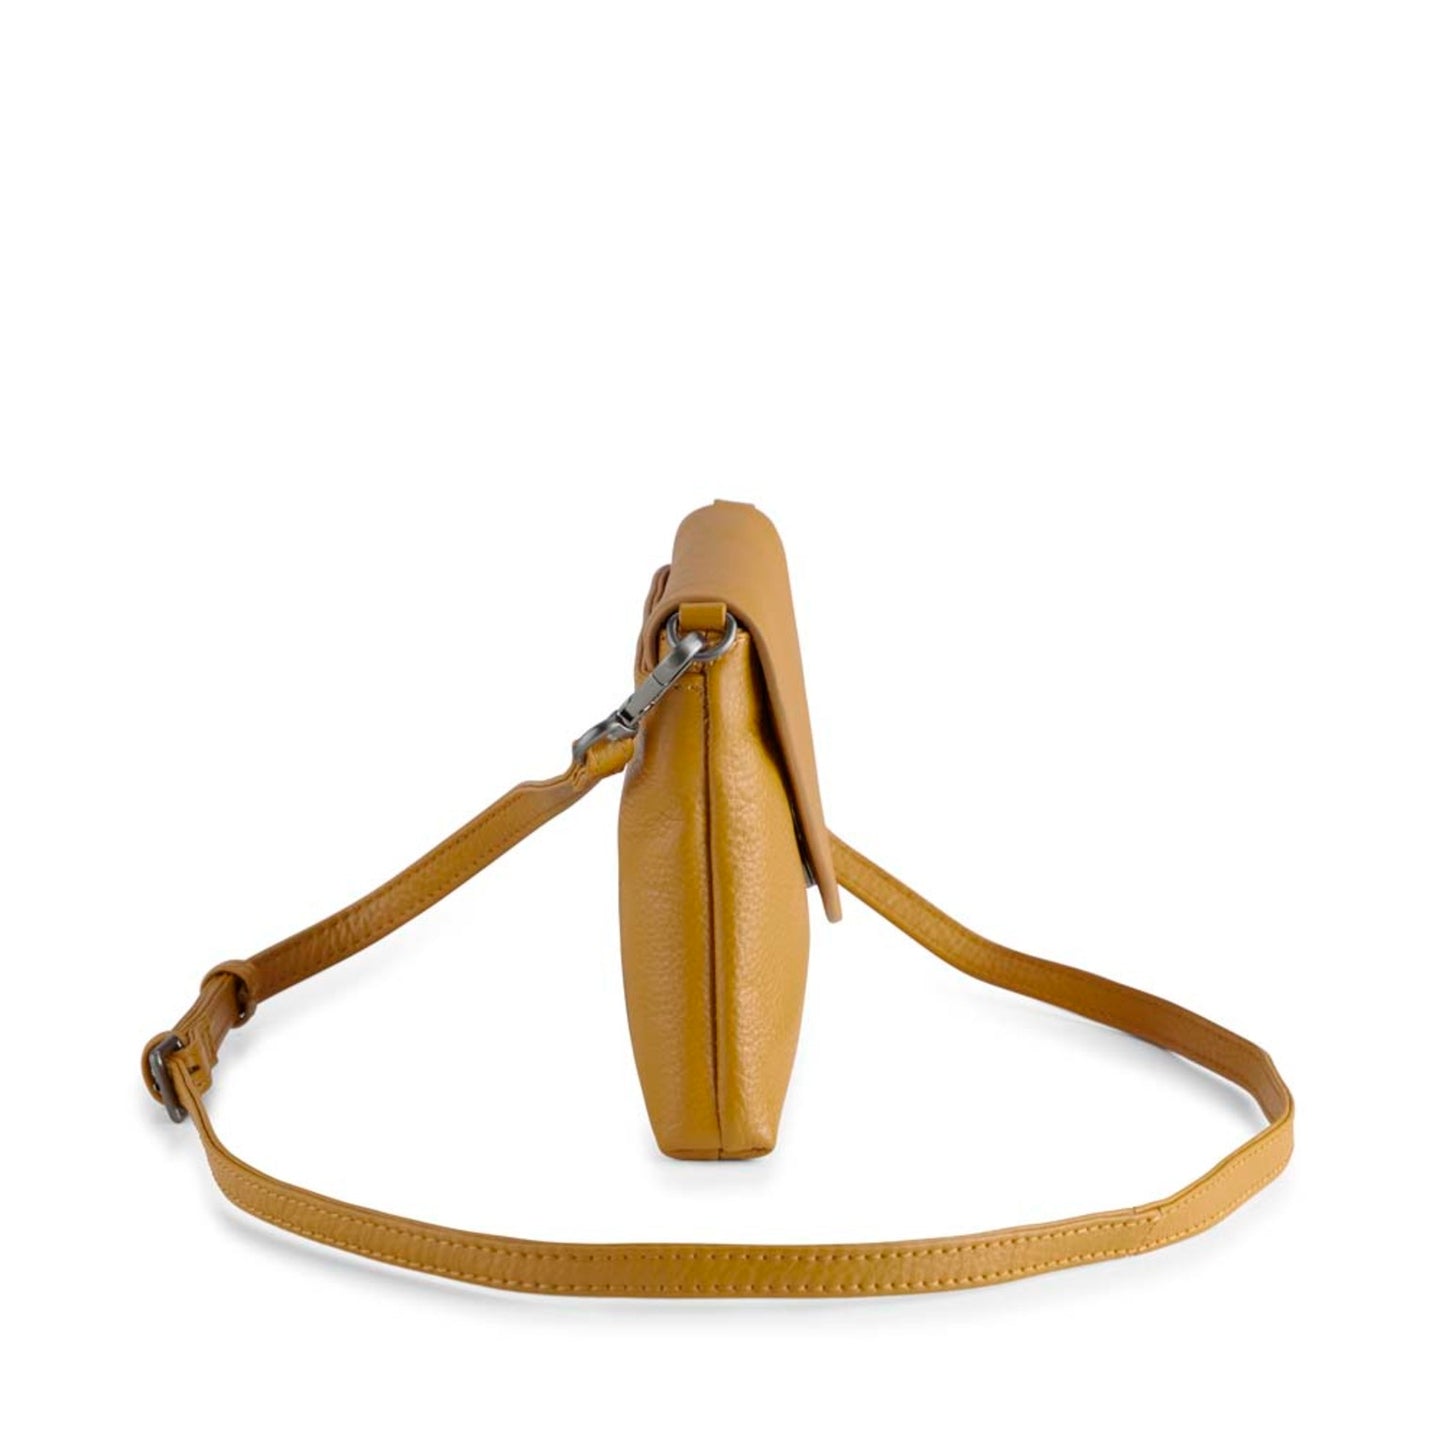 De Jenny Crossbody Bag in de kleur Grain (Amber kleur) is onze klassieker maar dan in een frisse gele kleur. De schoudertas is te koop in de winkel van Bij Saar Thuis Haarlem